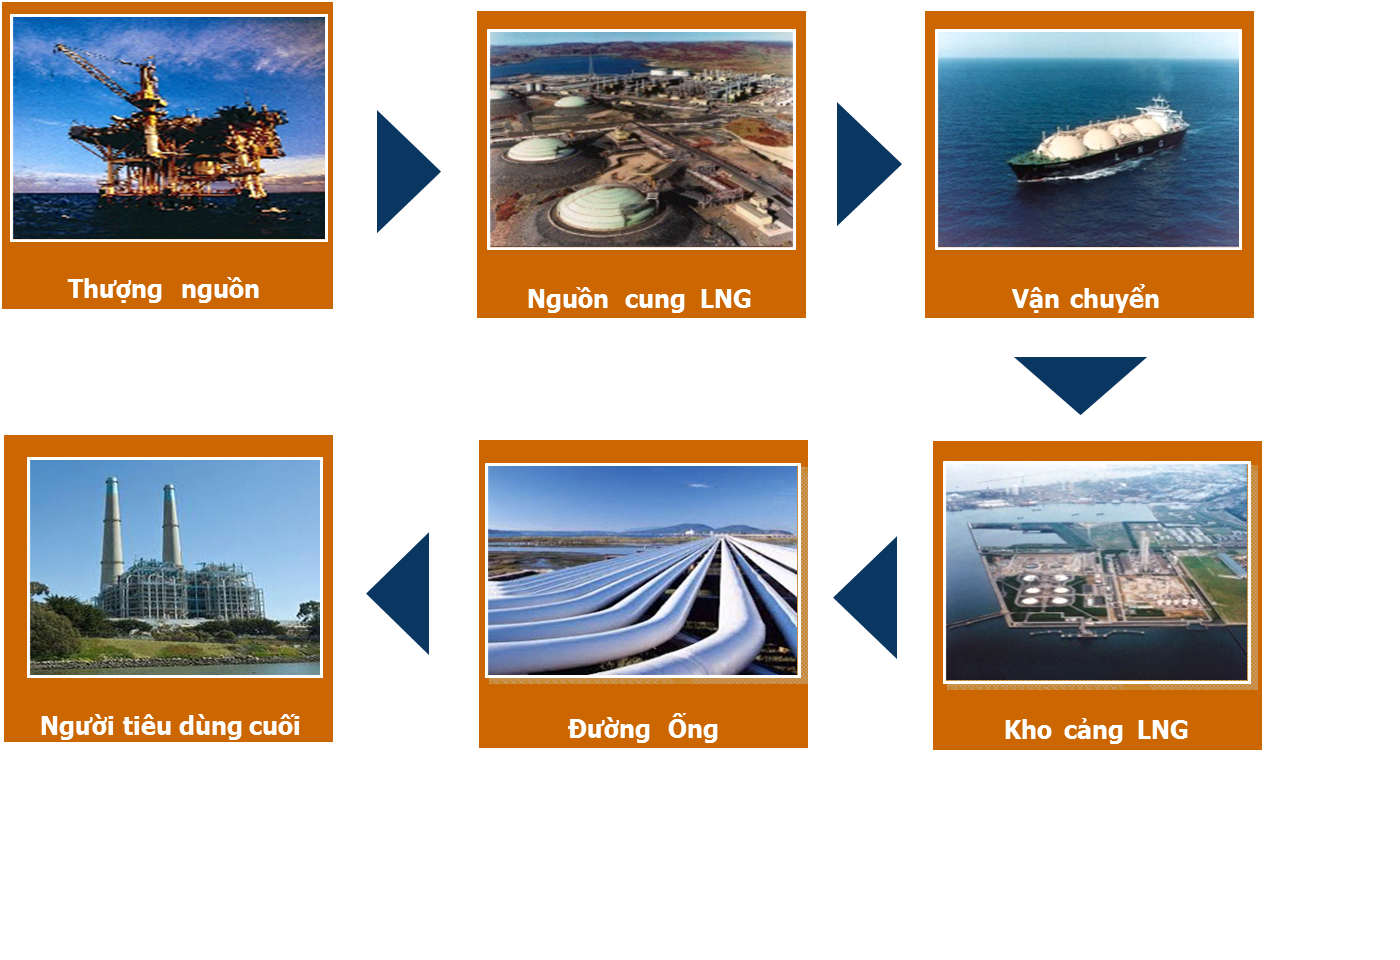 Khí thiên nhiên hóa lỏng - một loại nhiên liệu sạch và hiệu quả trong nhiều lĩnh vực của đời sống. Hãy xem hình ảnh liên quan đến khí LNG và khám phá cách mà nó đã được ứng dụng trong sản xuất, vận tải và năng lượng. Bạn sẽ bị lôi cuốn bởi sự tiện lợi và hiệu quả của nhiên liệu này.